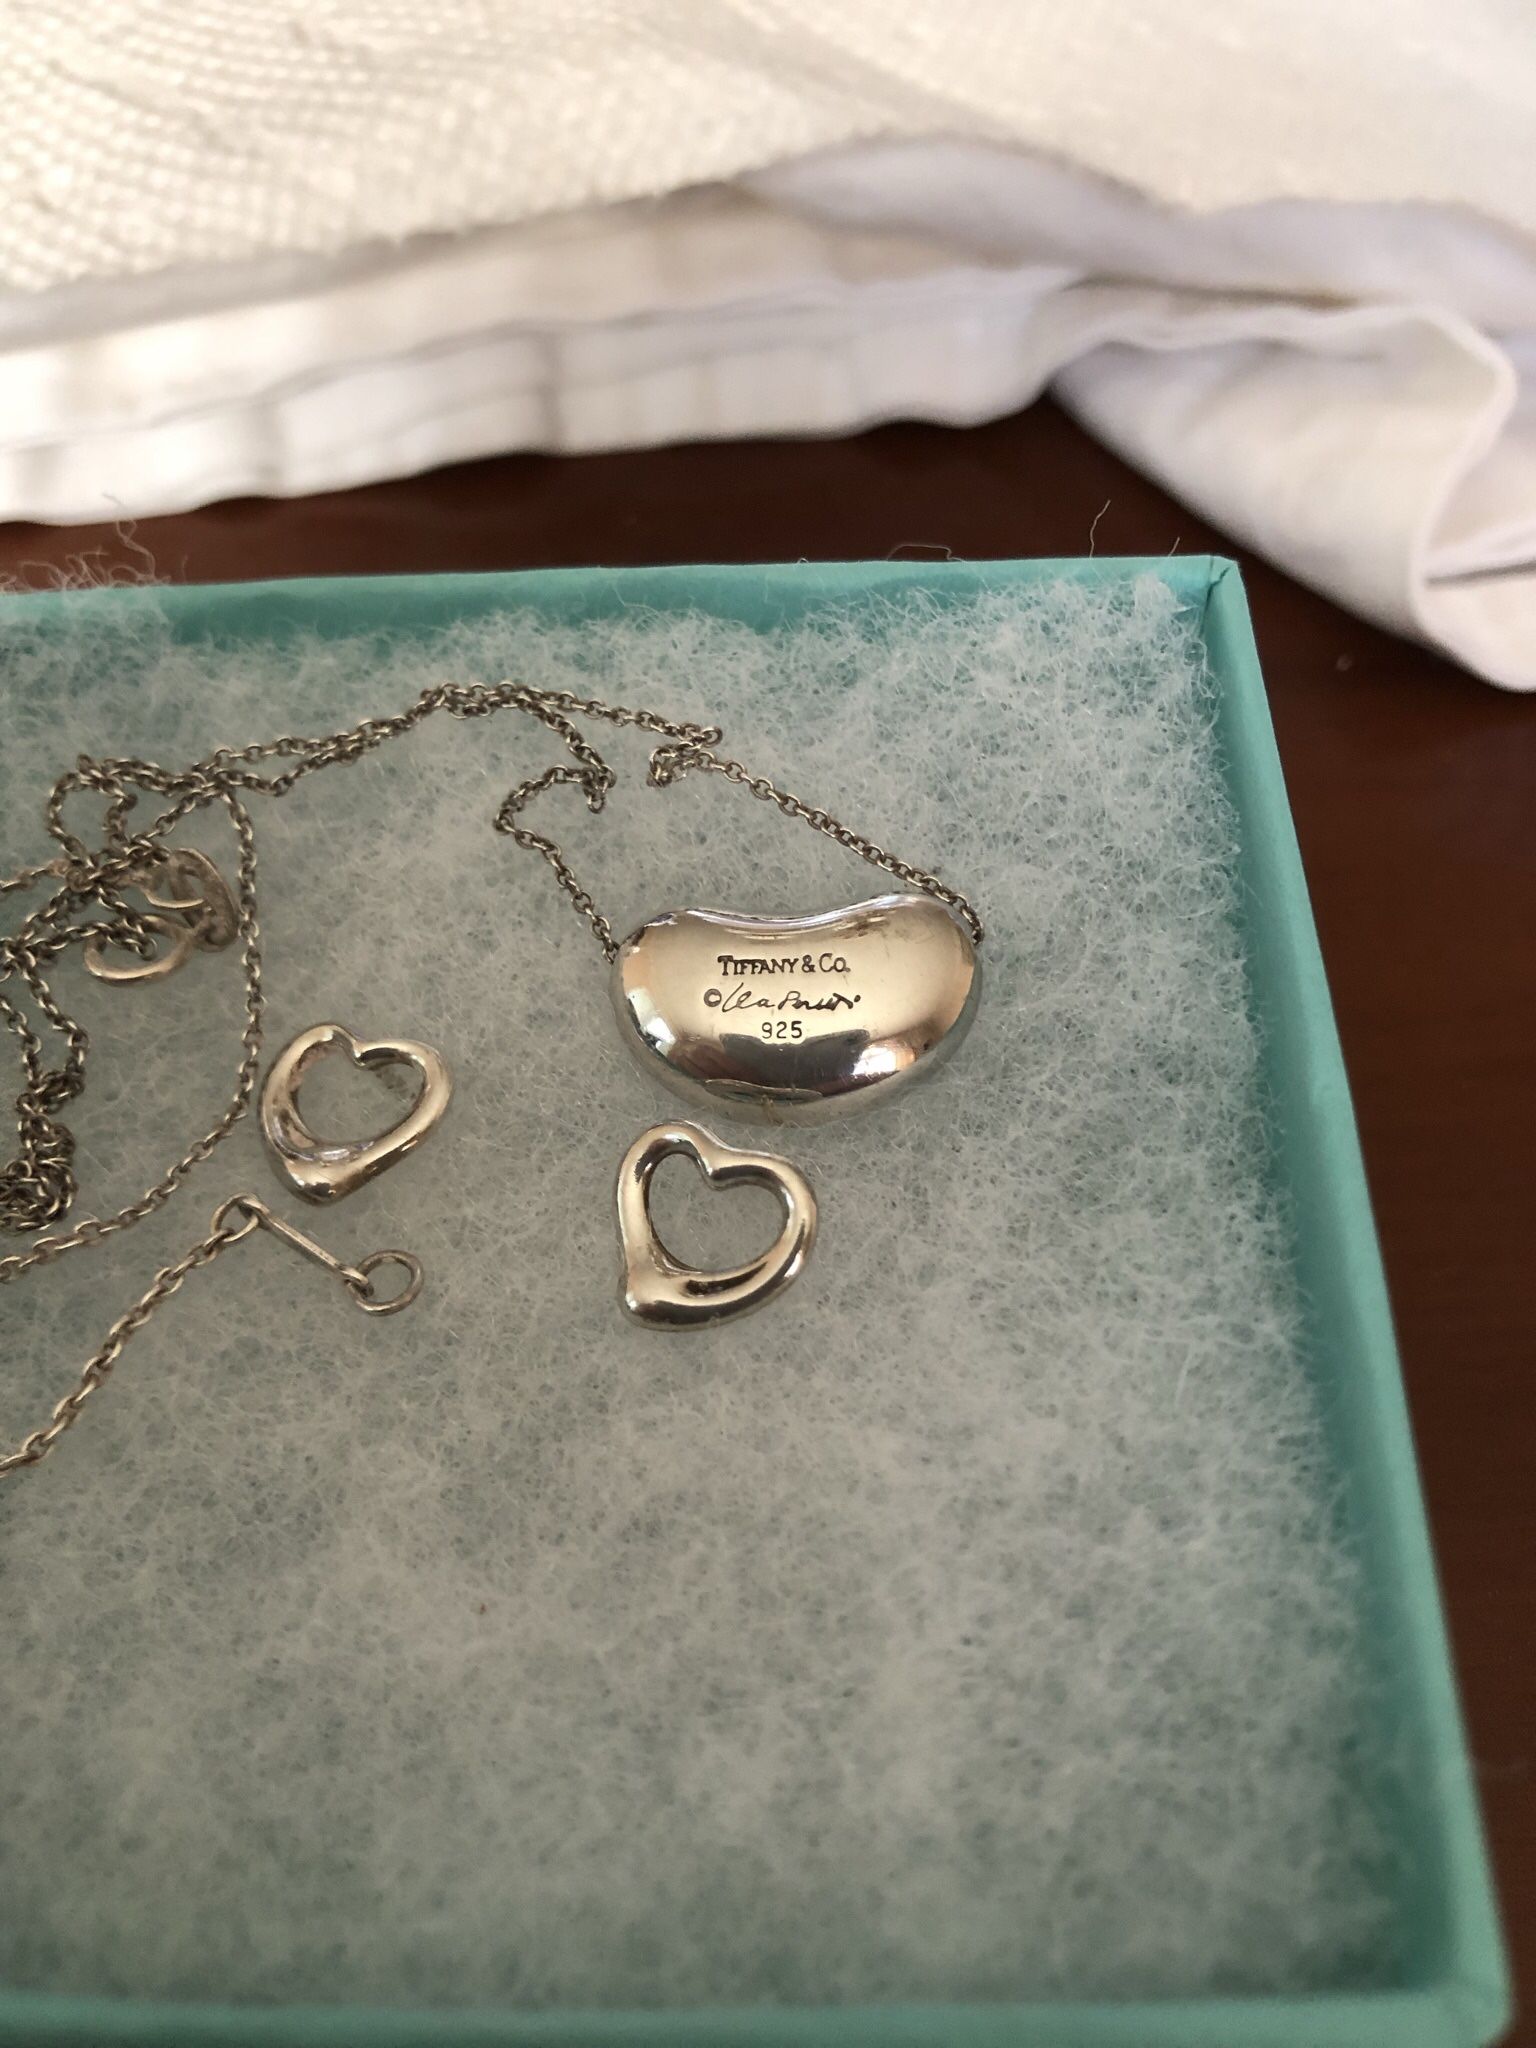 Both Sterling Silver Tiffany Open Heart Earrings & Bean Necklace 